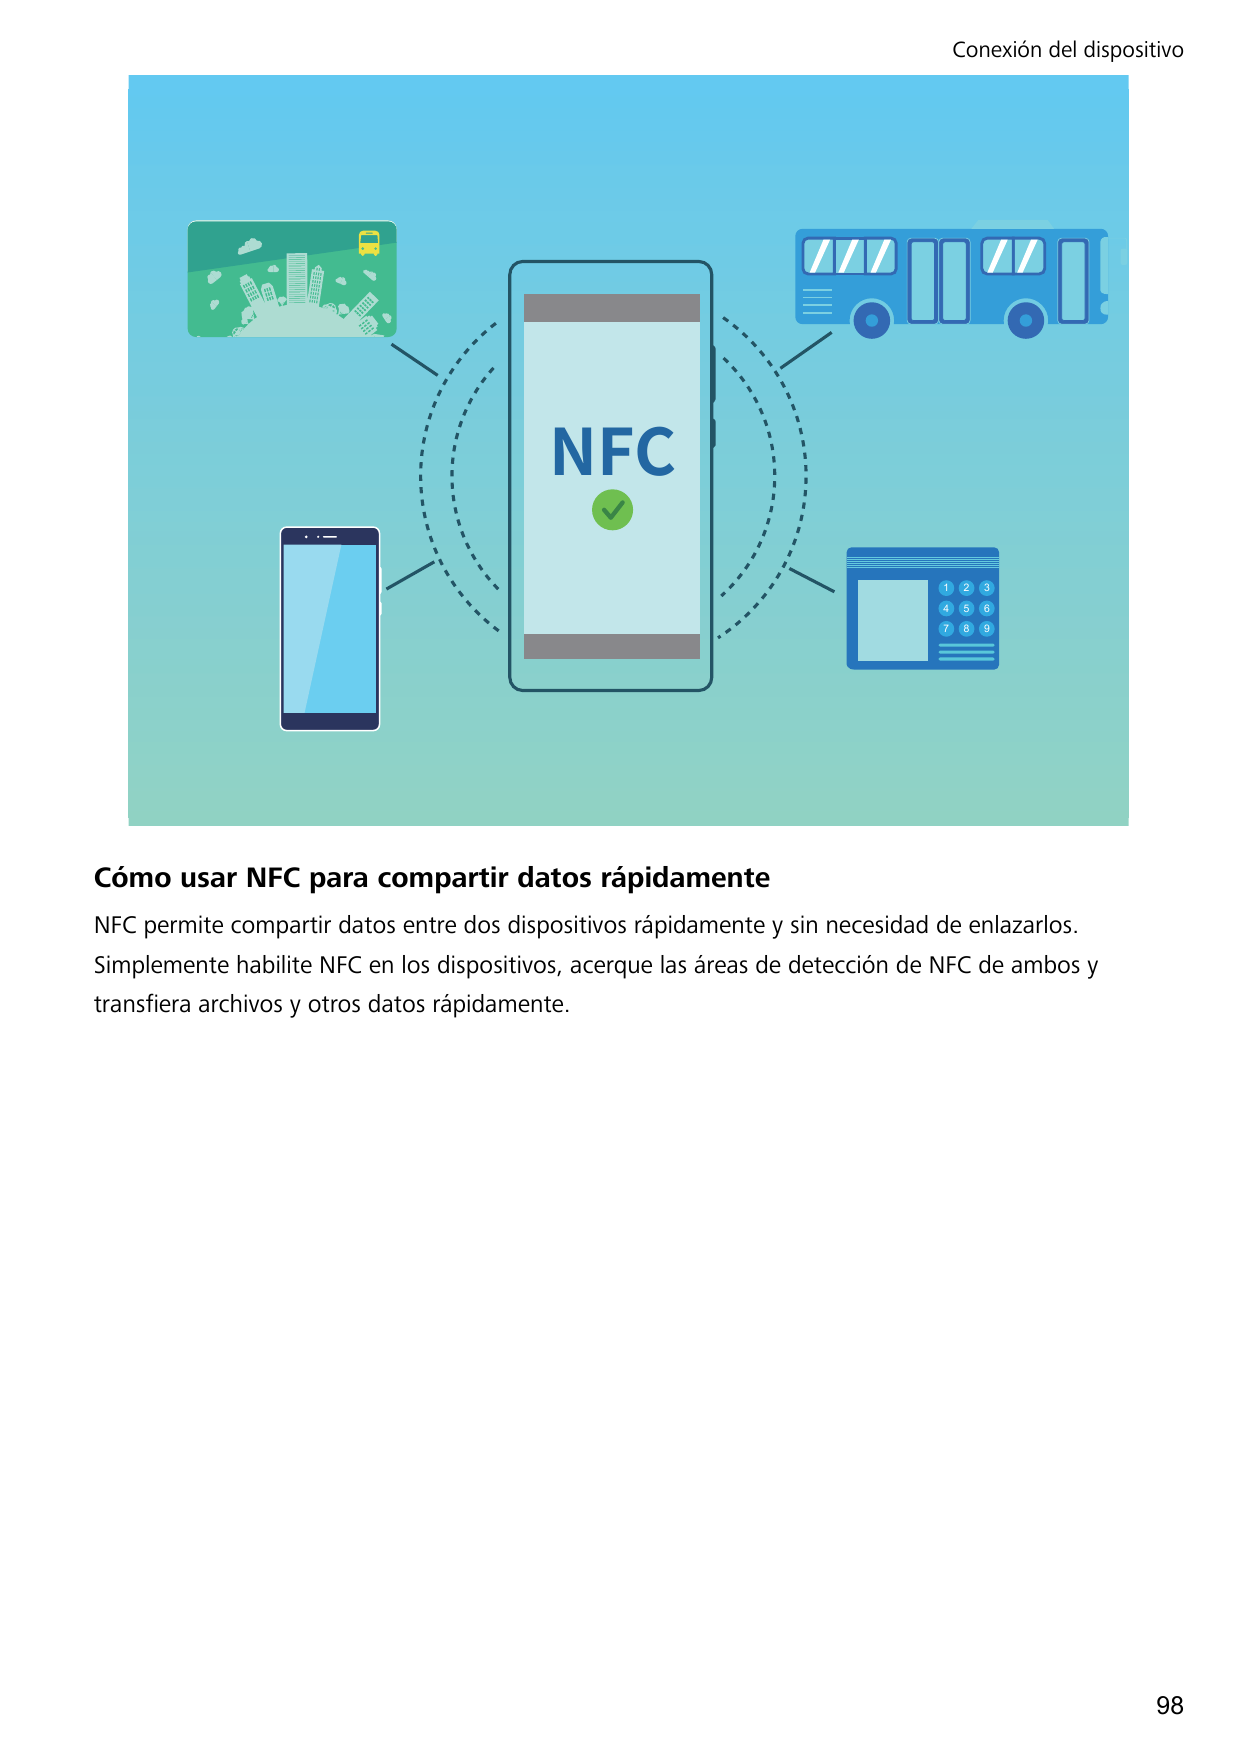 Conexión del dispositivo/'$123456789Cómo usar NFC para compartir datos rápidamenteNFC permite compartir datos entre dos disposit